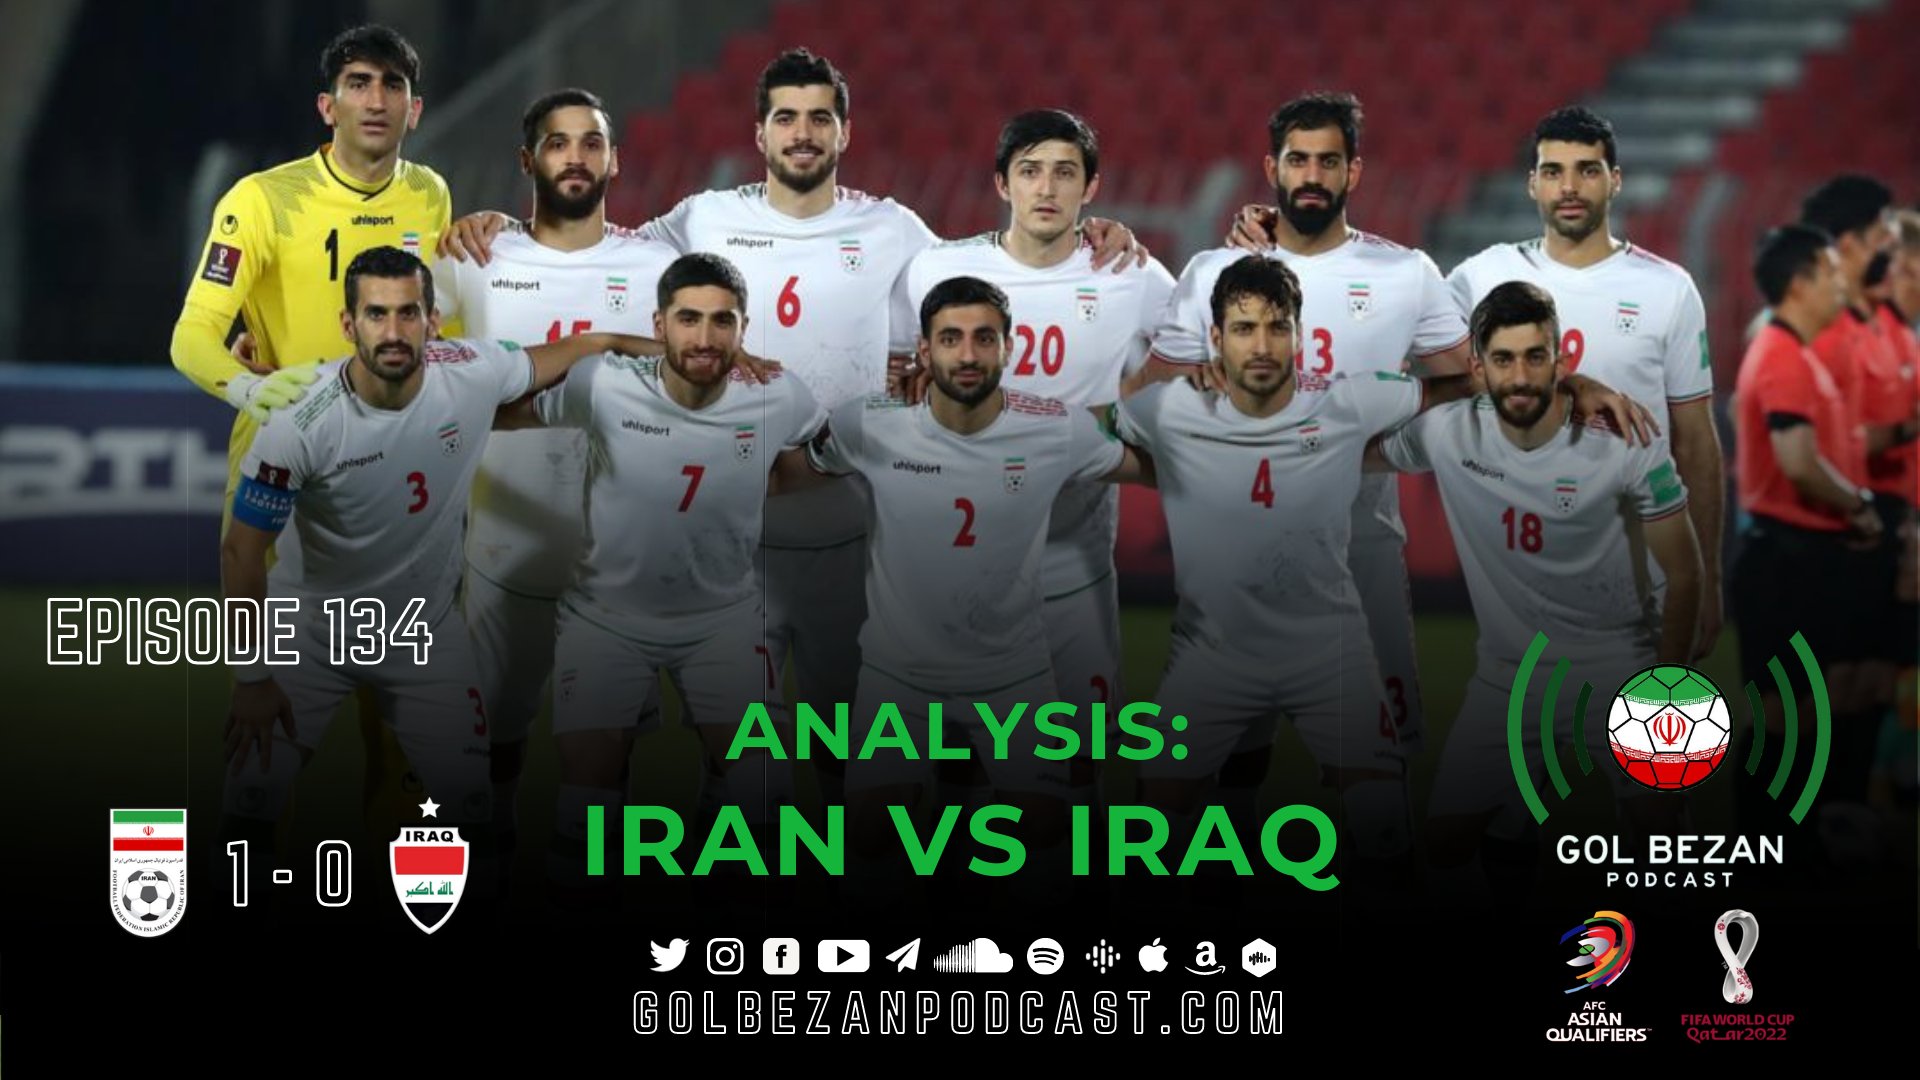 Analysis: Iran 1 - 0 Iraq